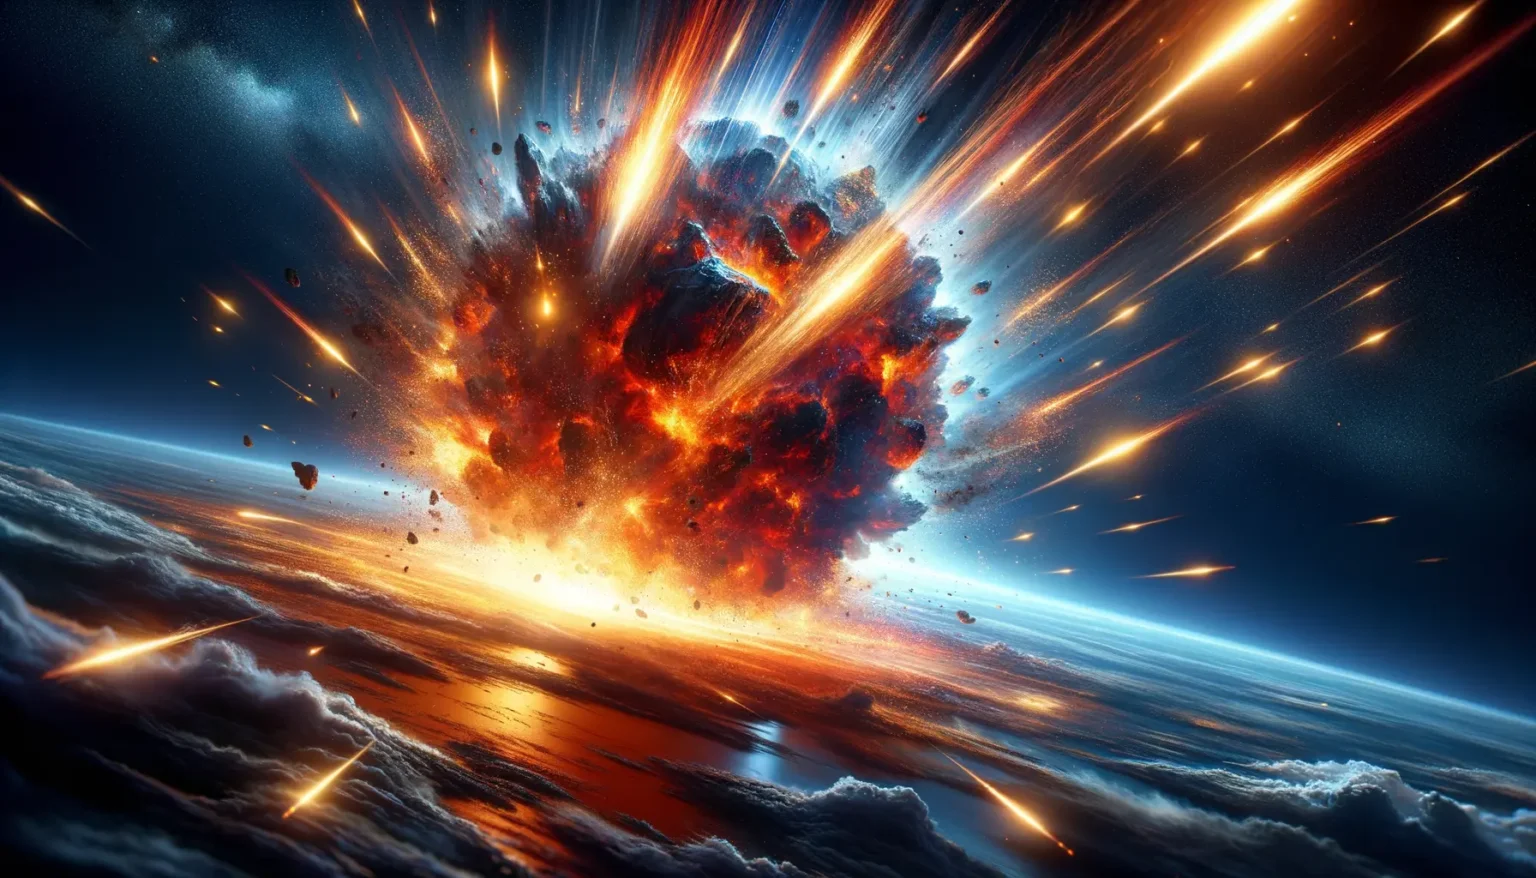 Eine dramatische Raumexplosion mit intensiven roten und orangefarbenen Flammen und funkelnden Trümmern, die sich gegen den dunklen Sternenhimmel und eine Planetenoberfläche ausbreiten.